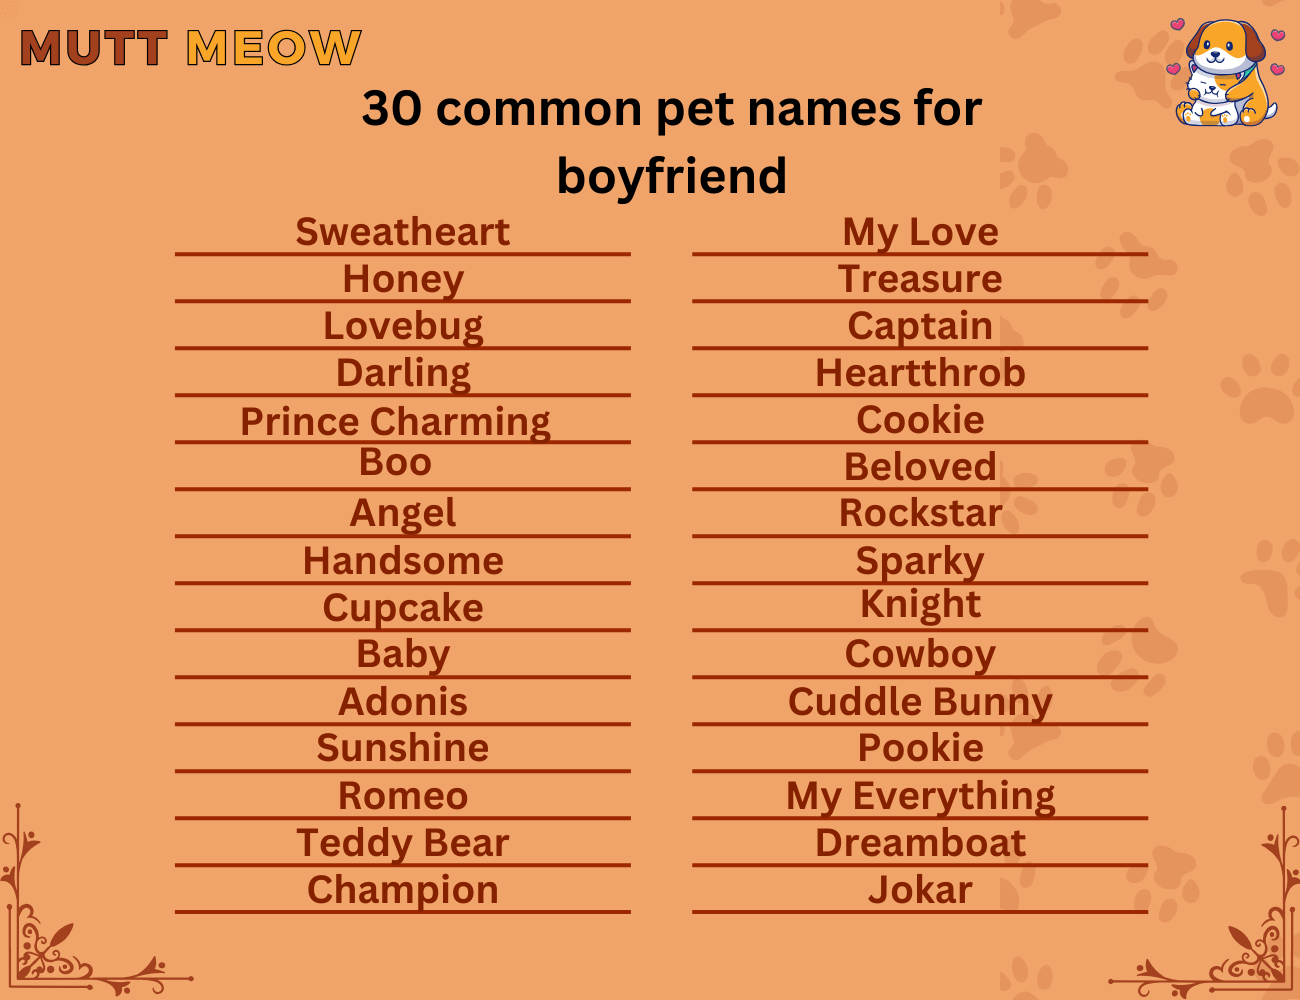 30 common pet names for boyfriend (